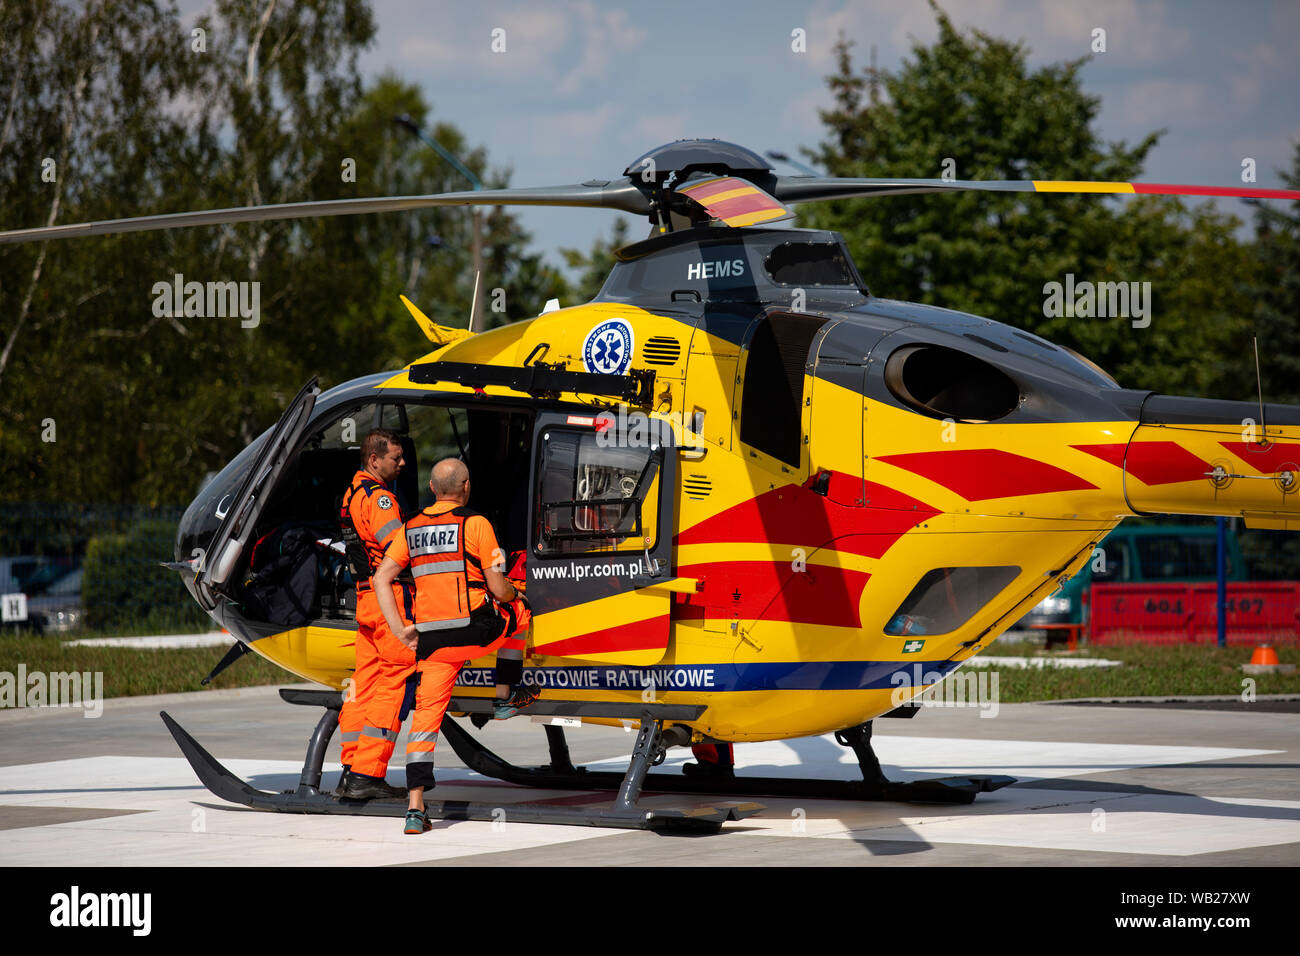 Polonia, Czestochowa - 06 agosto 2019: Air Ambulance (LPR) in azione presso la pista di atterraggio per aerei. Elicottero ec-135 e Air Ambulance in soccorso. Foto Stock